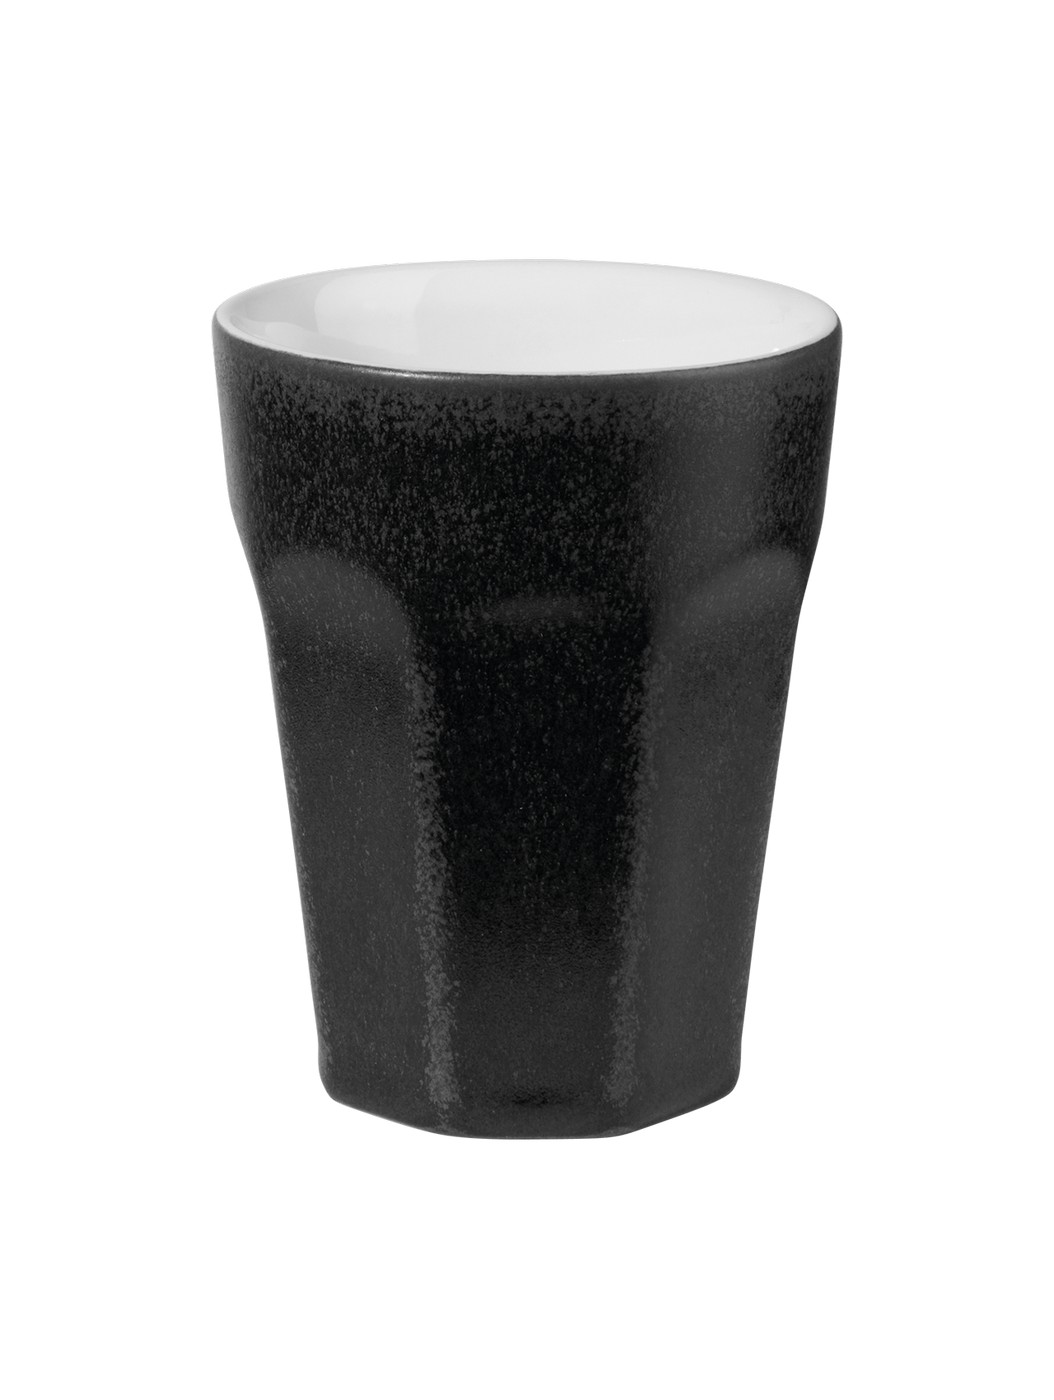 Kameninový hrnek na cappuccino 200 ml TI AMO COLORE ASA Selection - černý